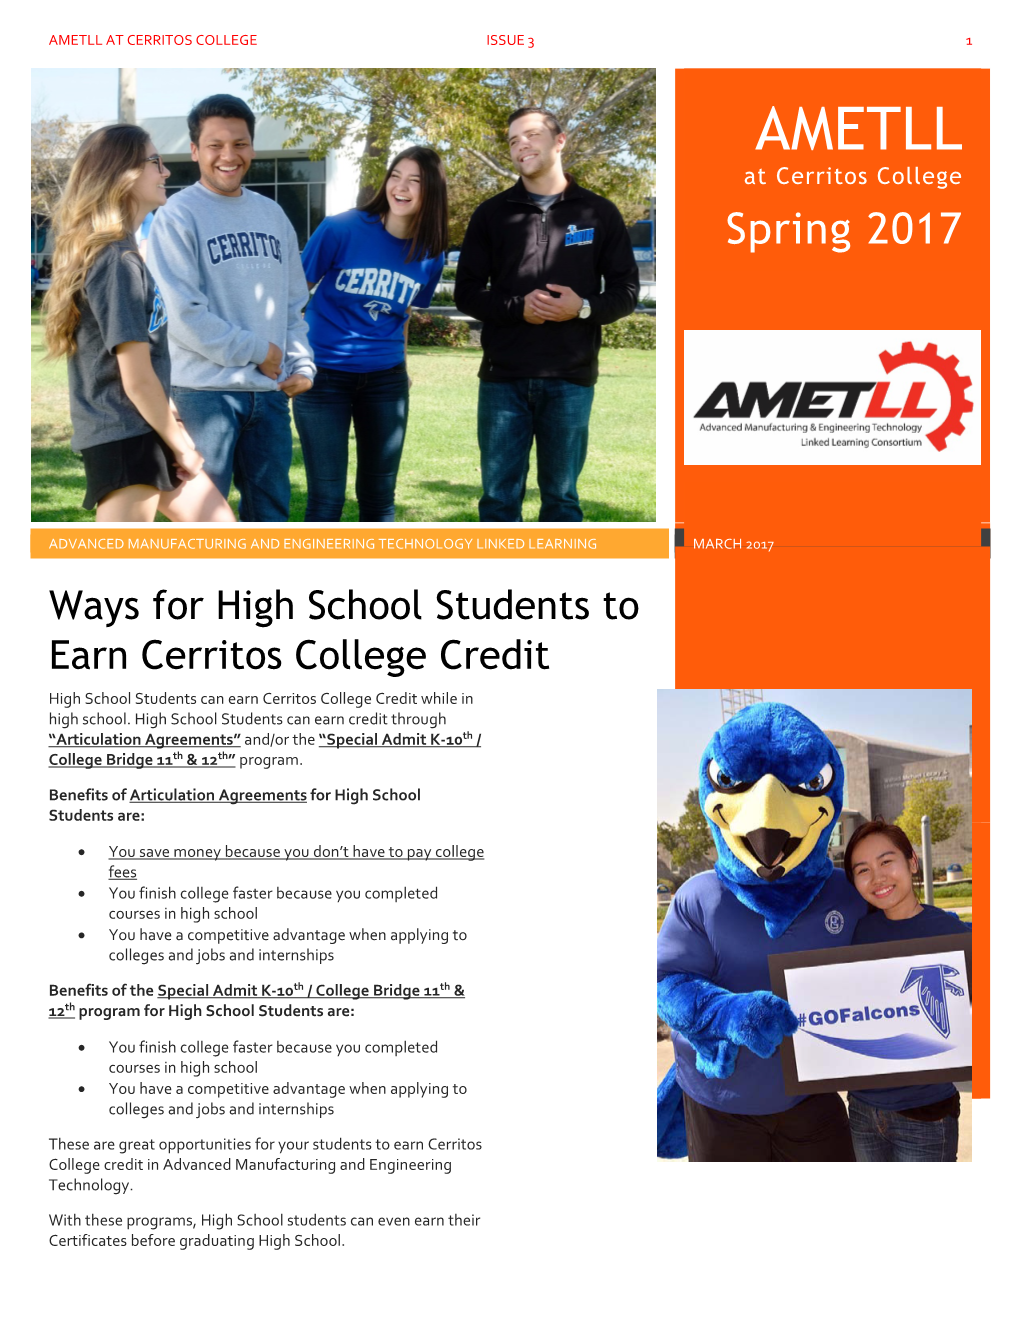 Ametll at Cerritos College Issue 3 1